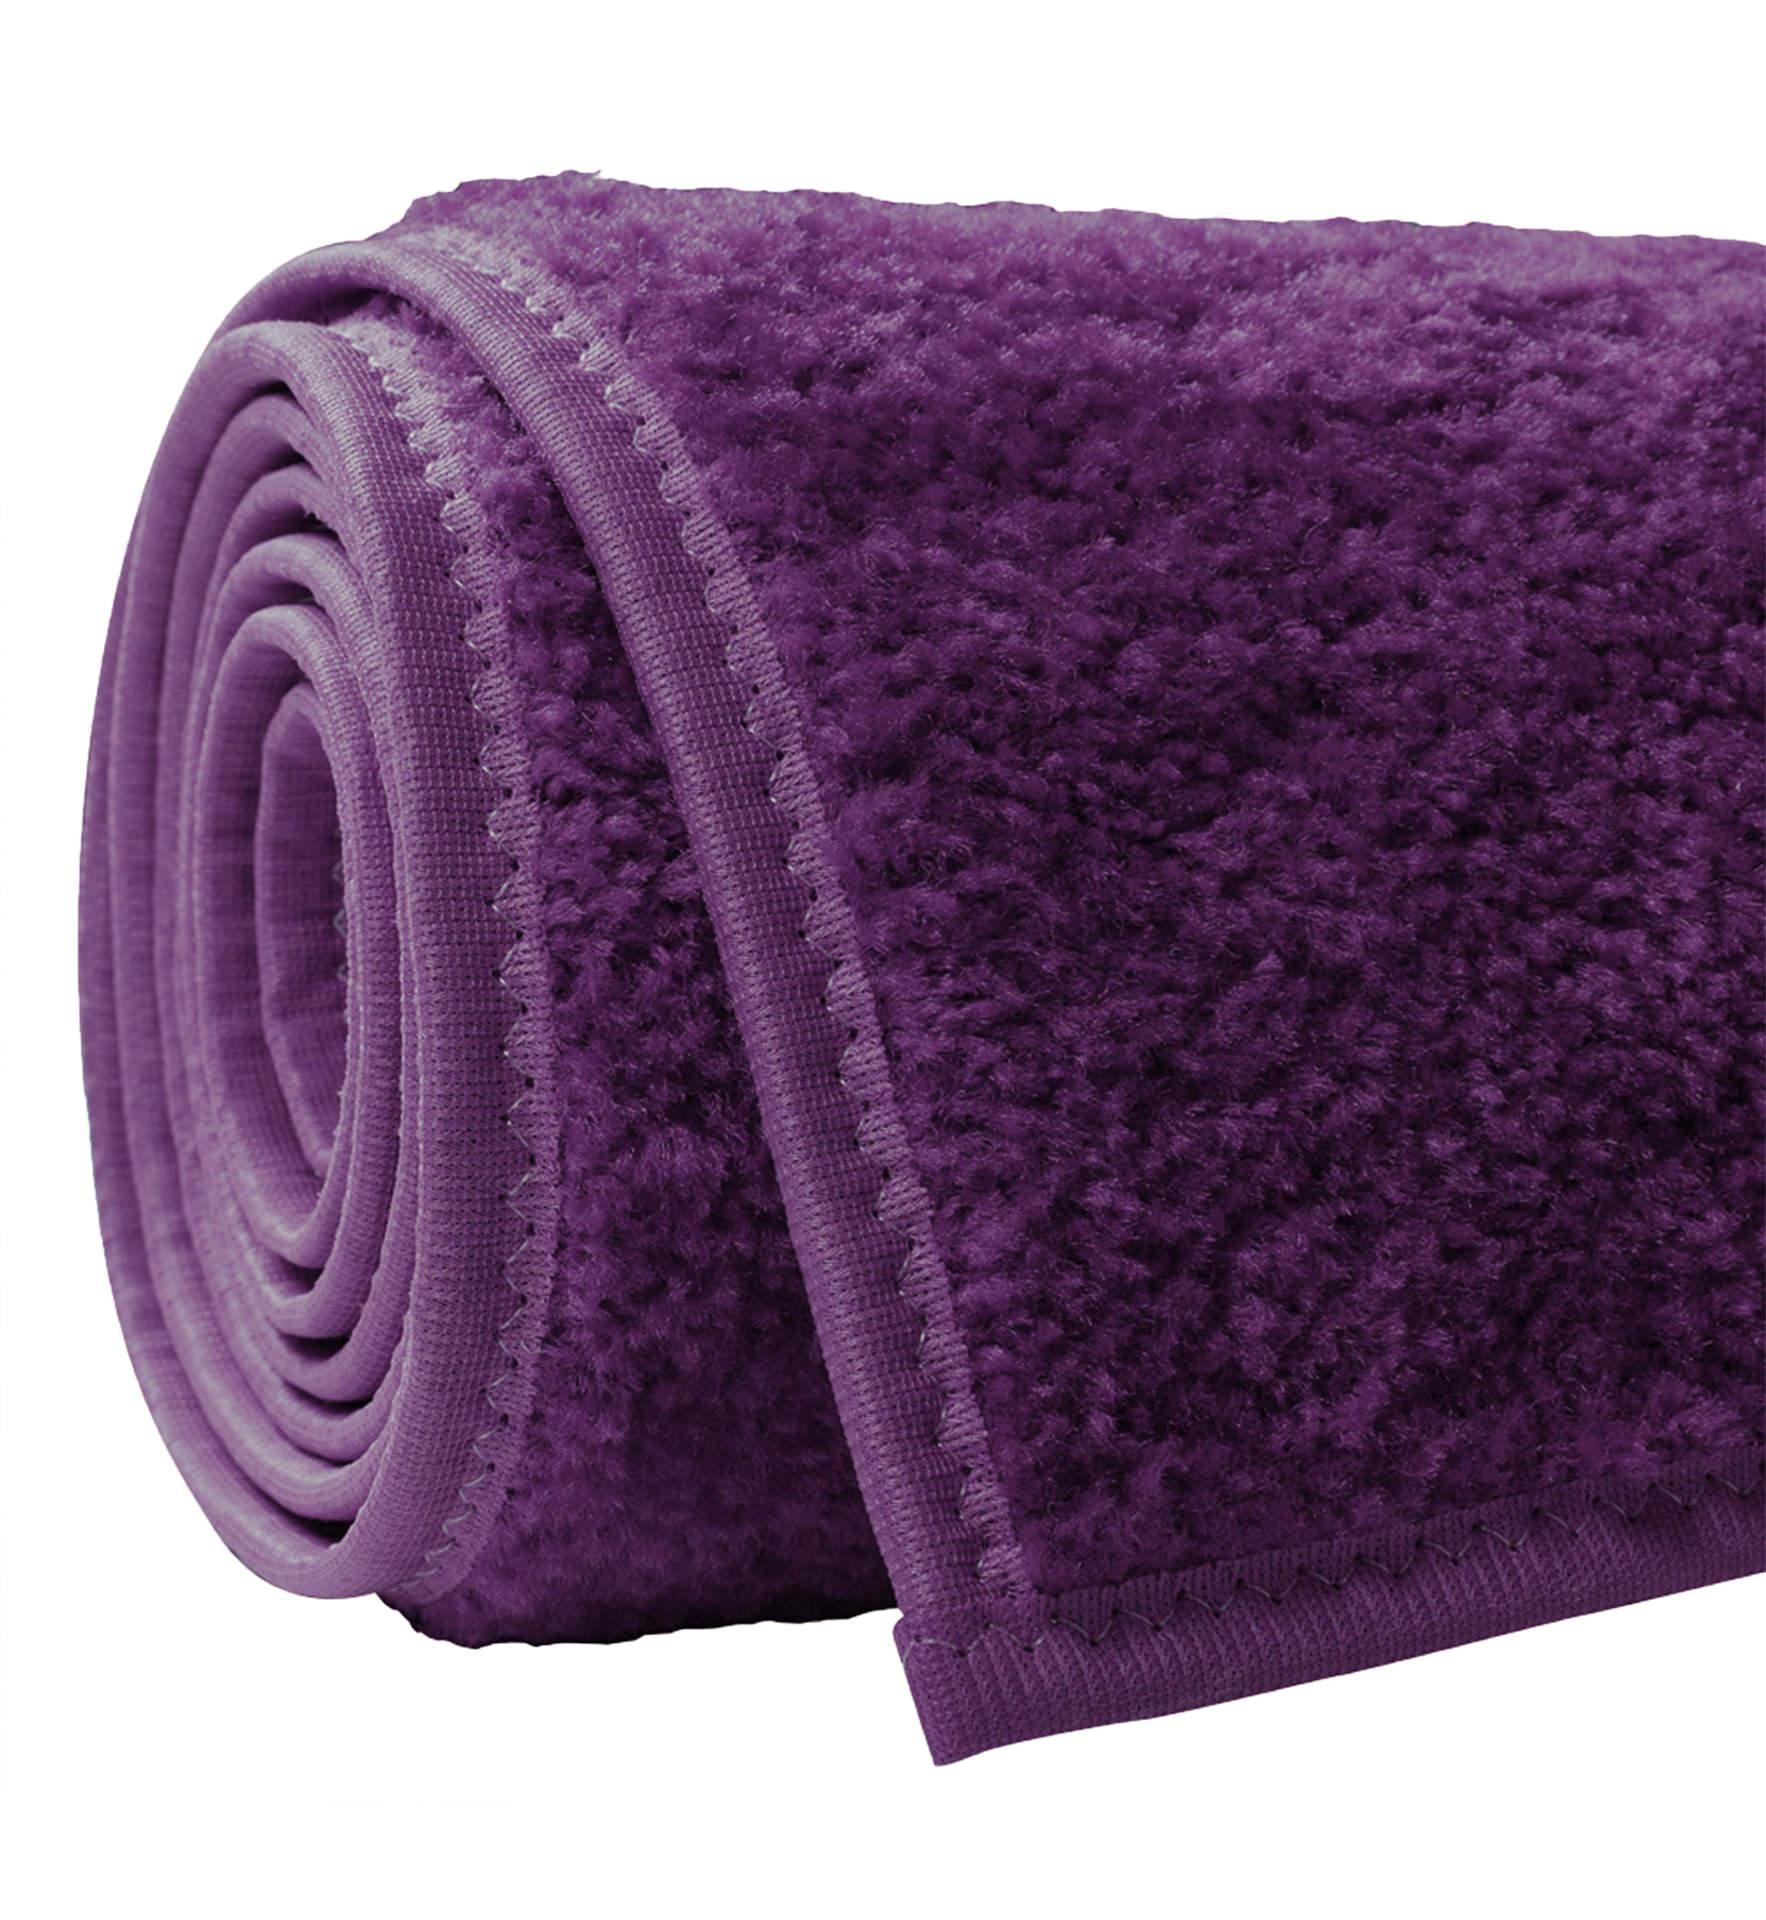 purple ceremonial carpet